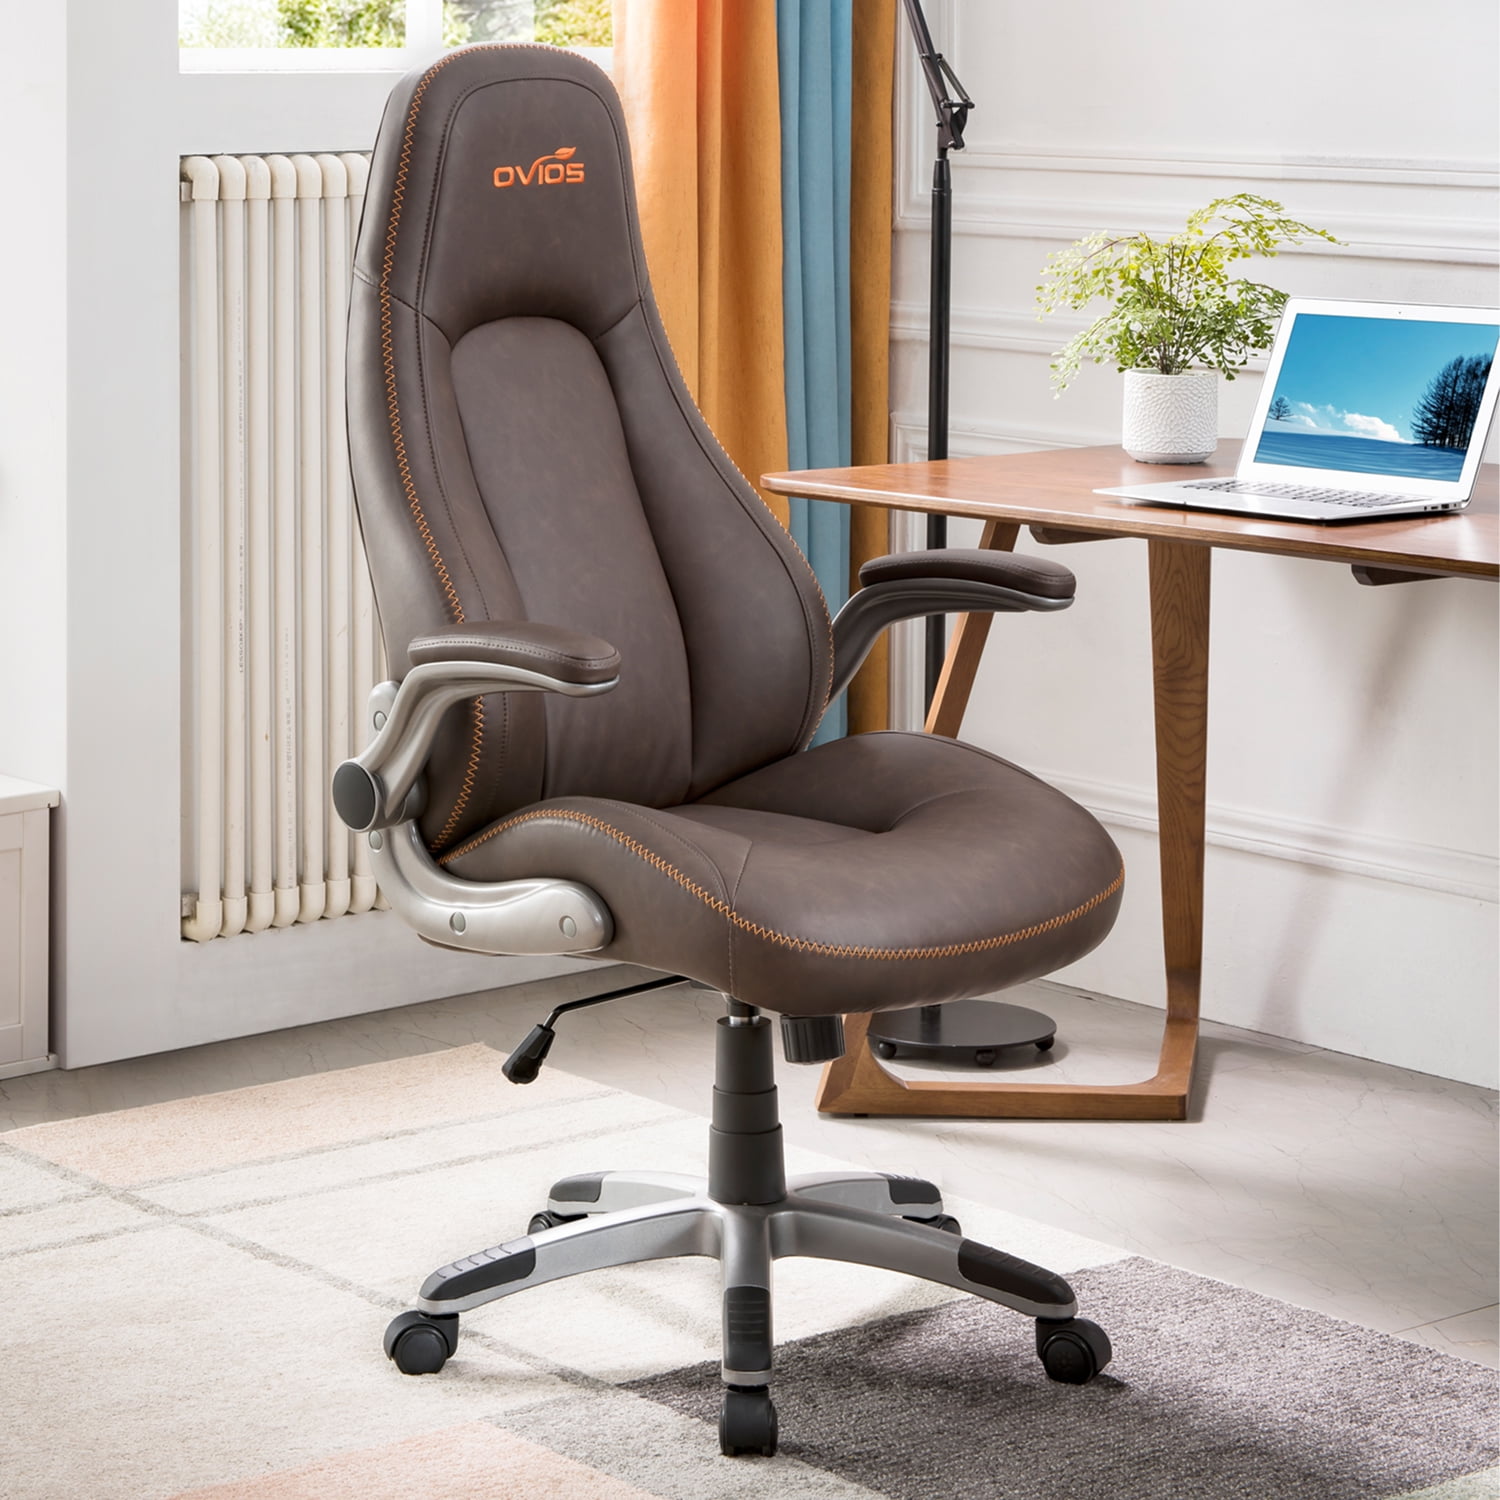 ovios Ergonomic Office Chair,Modern Computer Desk Chair,high Back